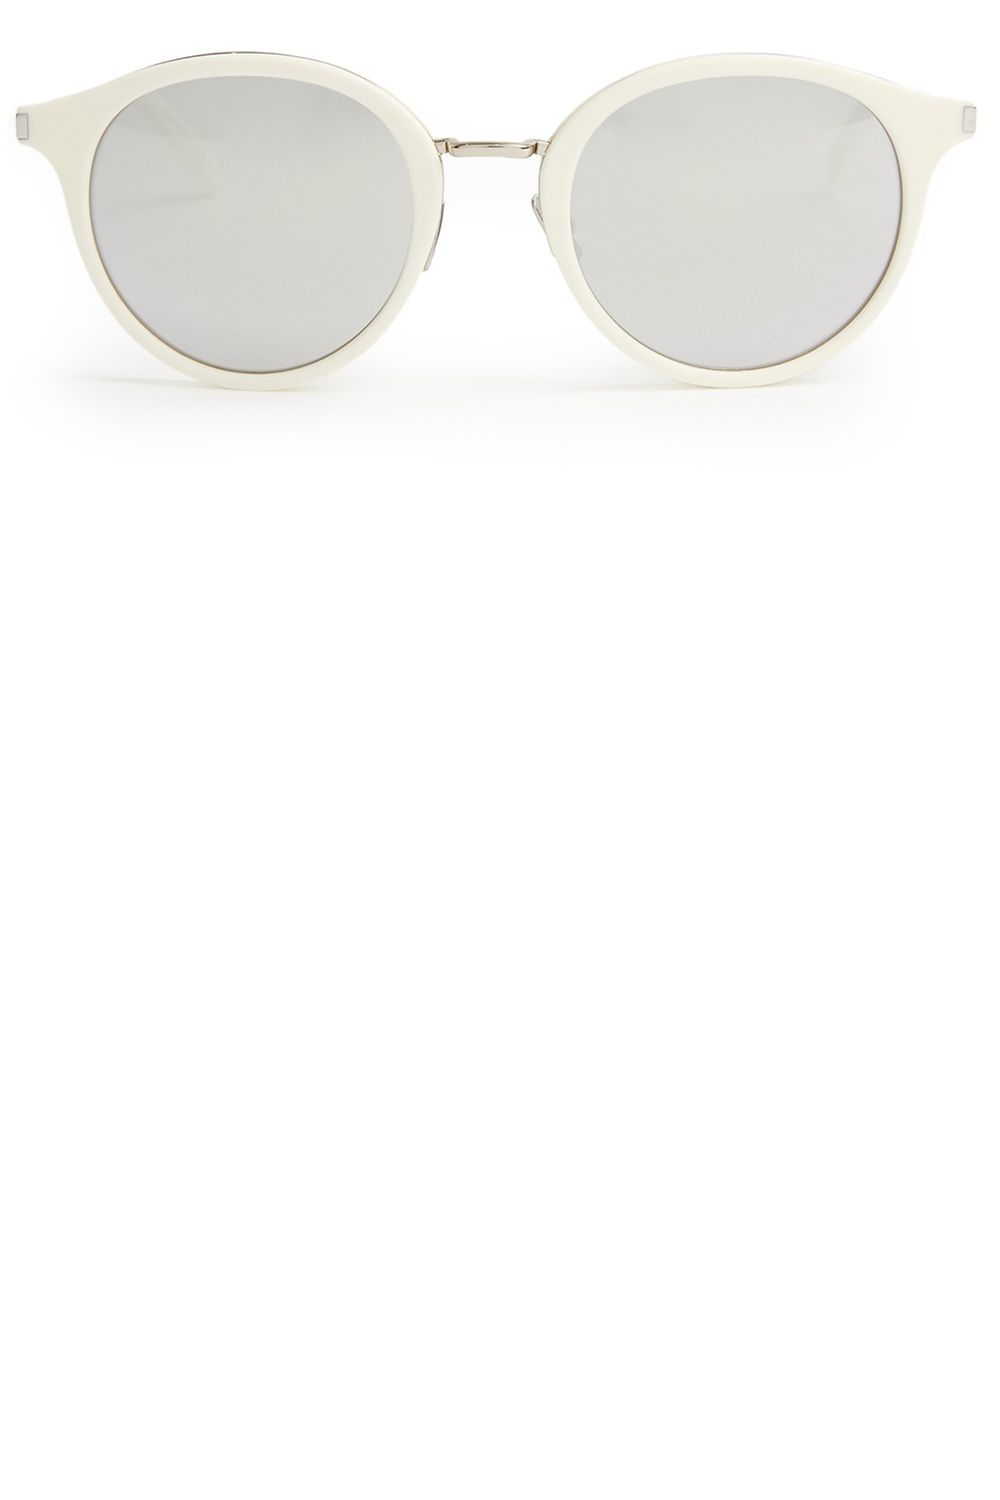 Buy White frame stylish sunglasses for women Online. – Odette